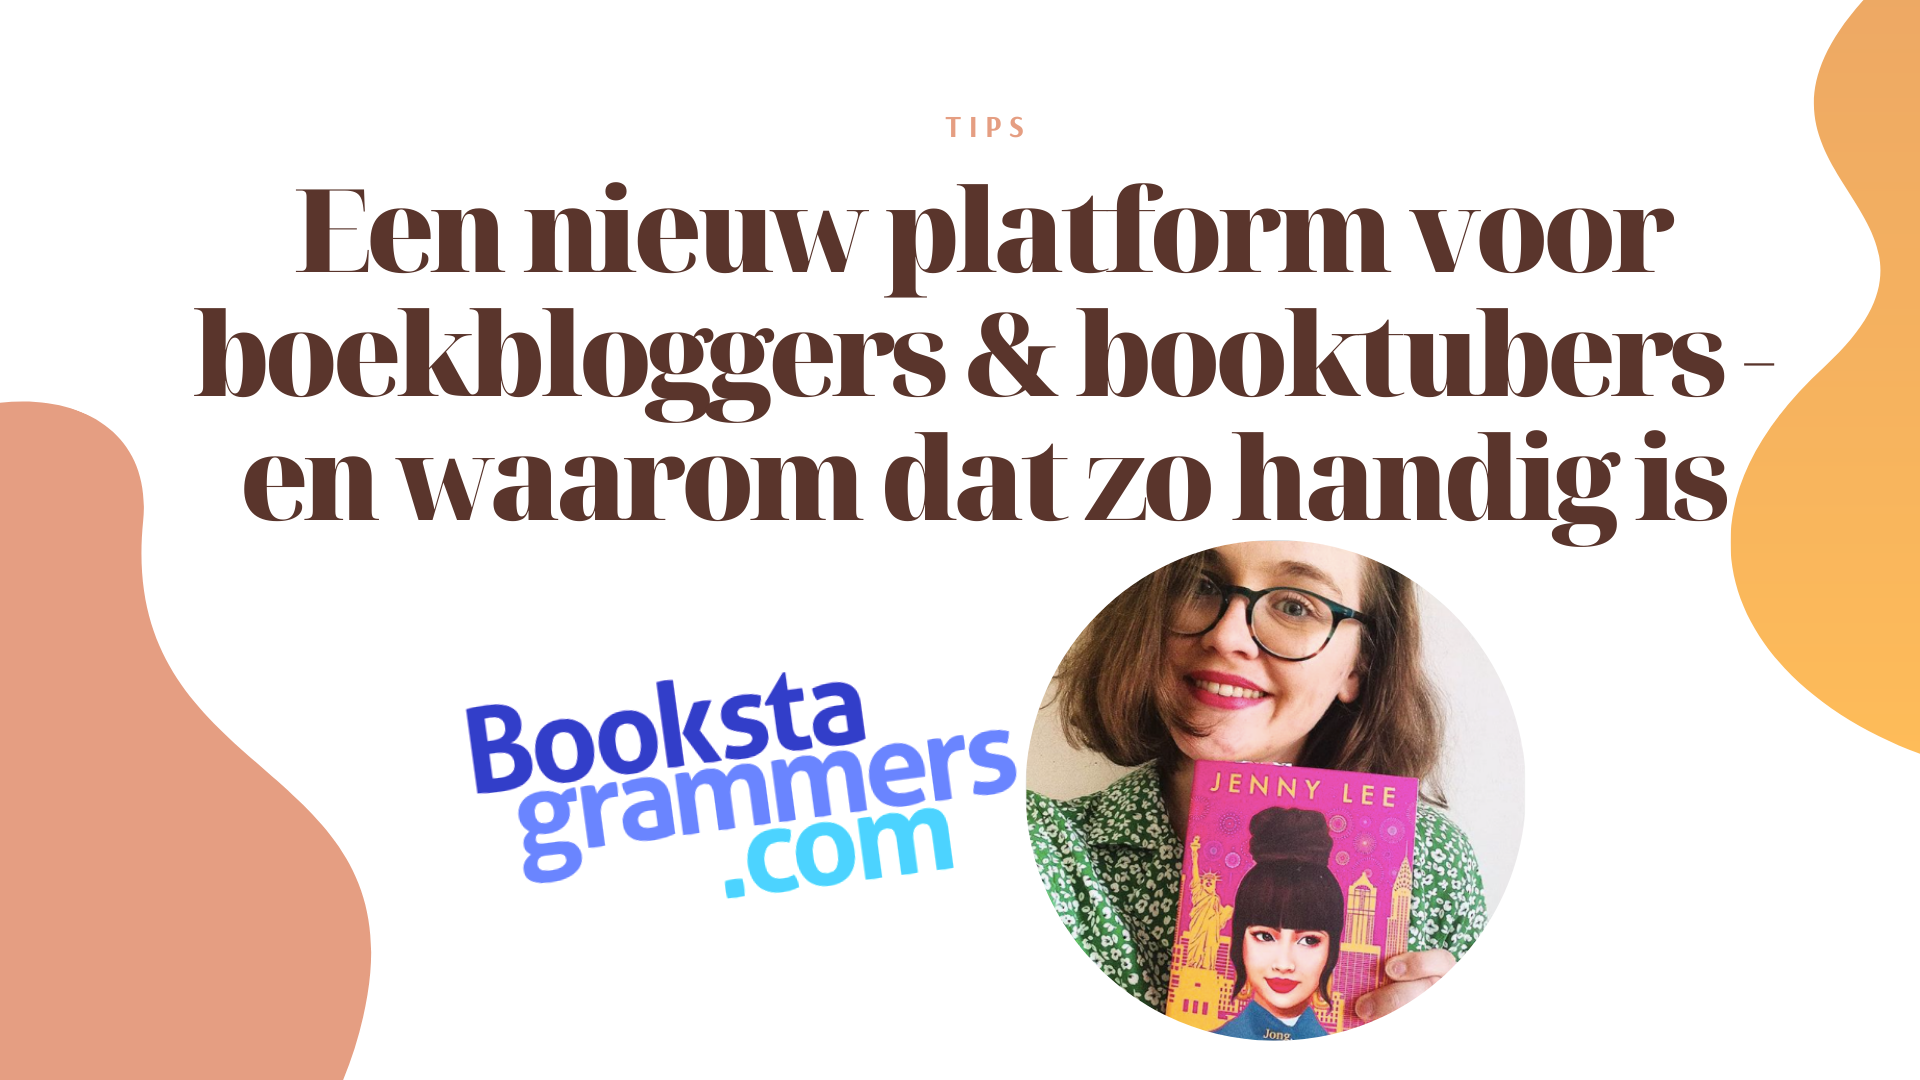 bookstagrammers.com nieuw platform